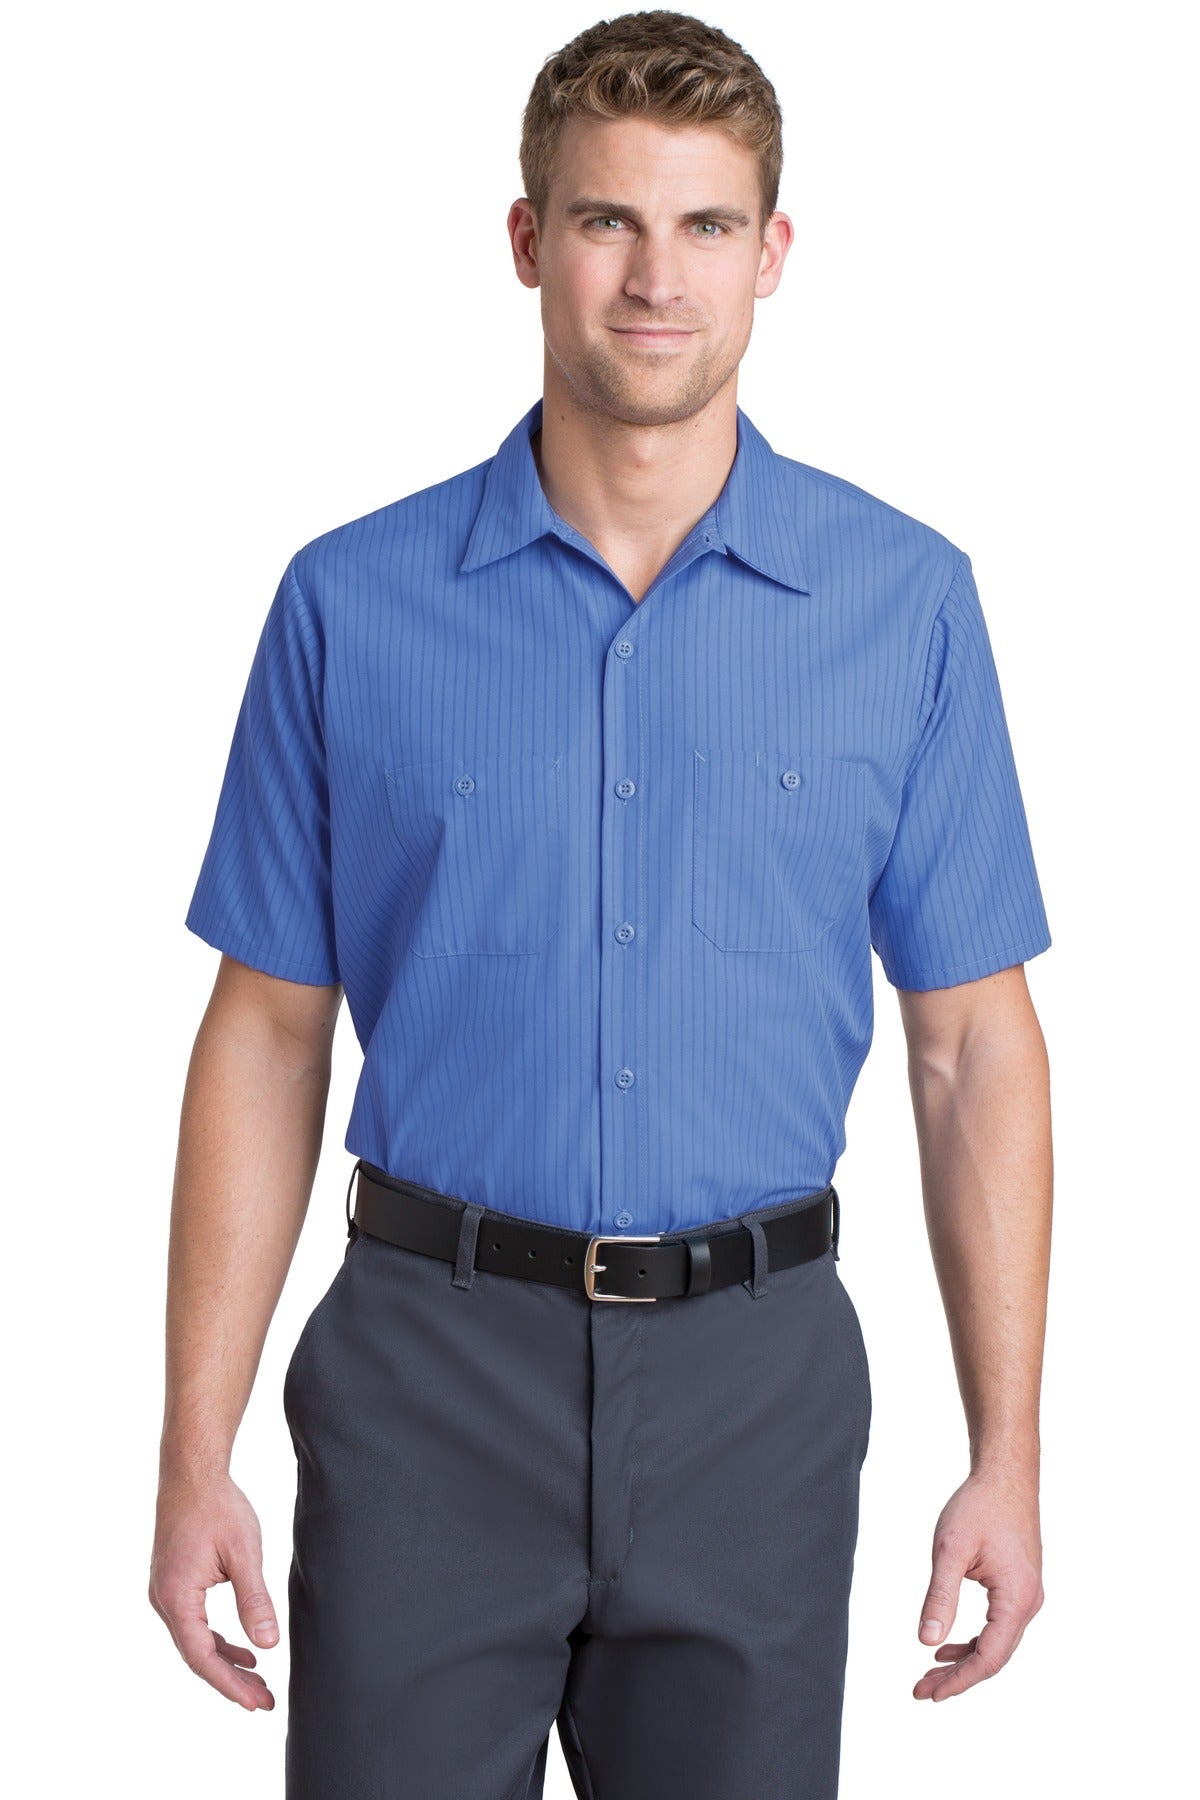 Red Kap Long Size, Short Sleeve Striped Industrial Work Shirt. CS20LONG